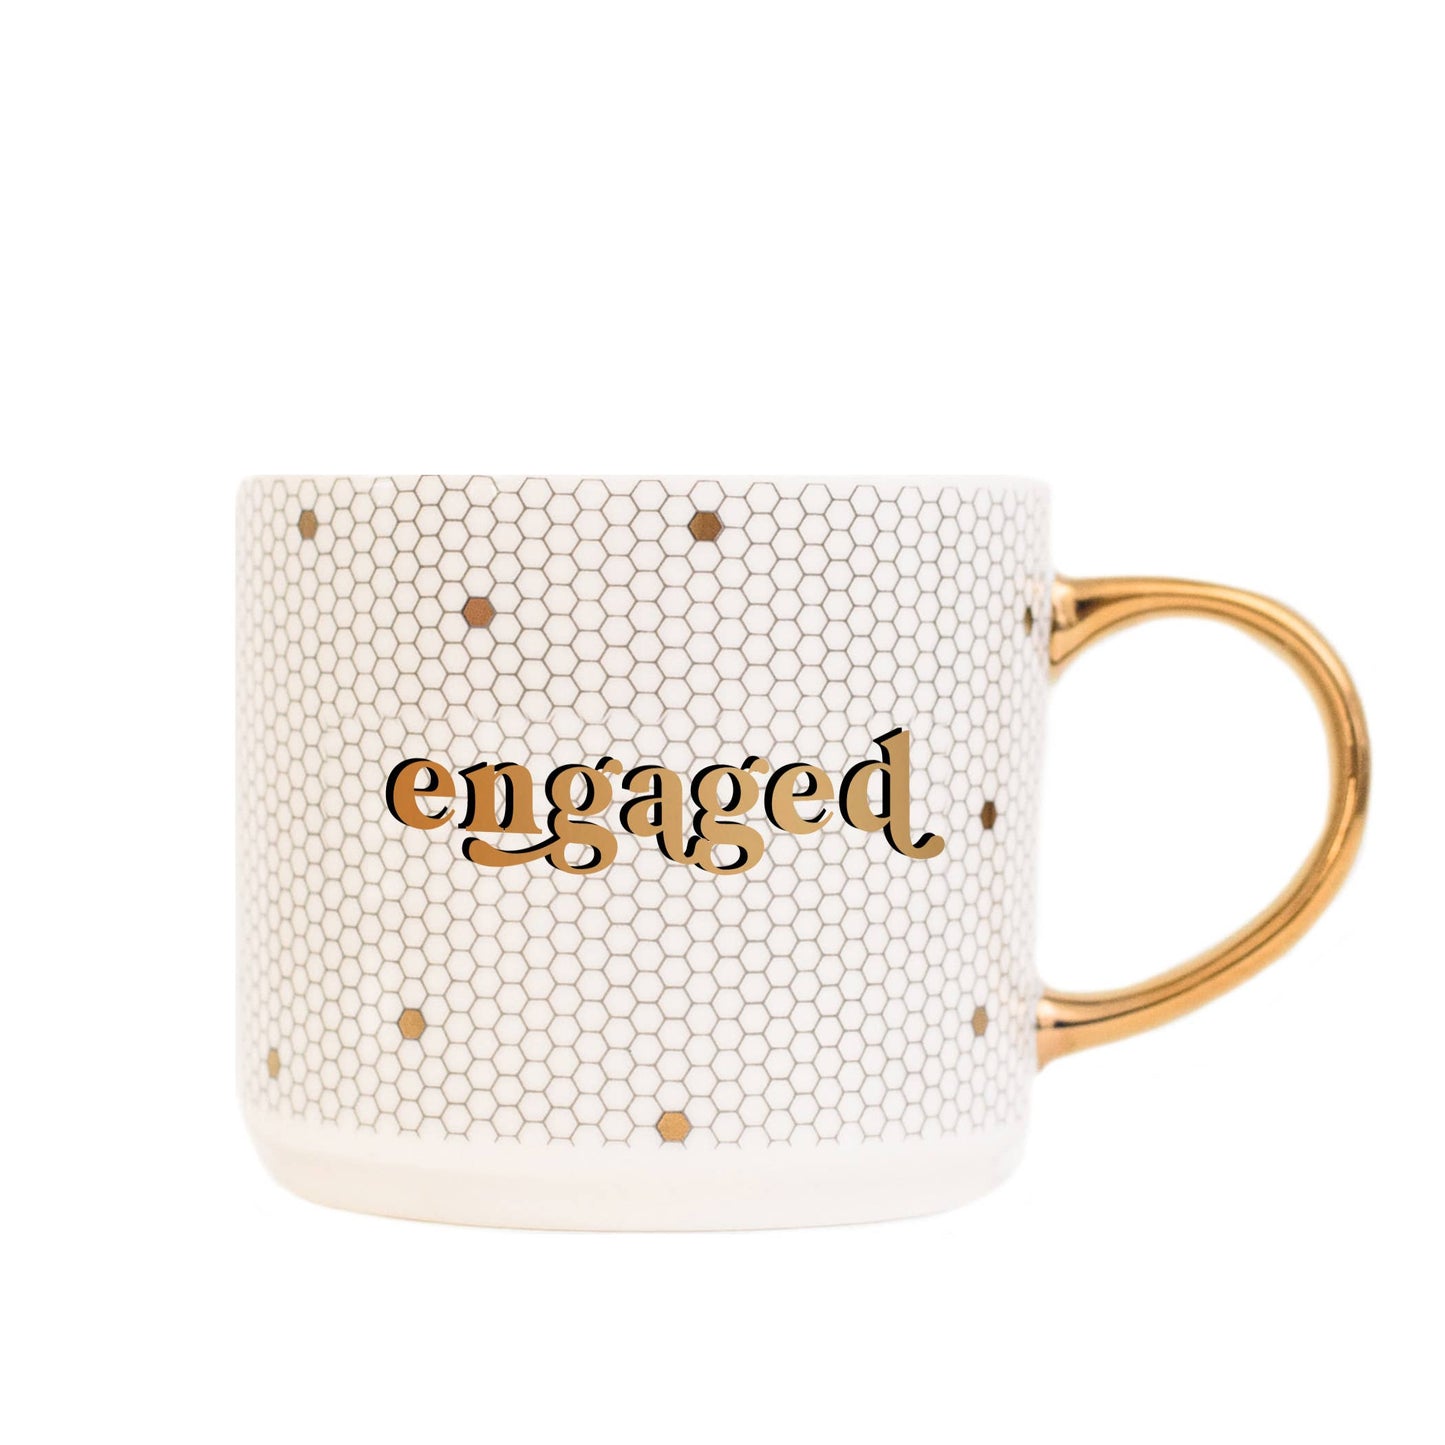 Engaged - Gold, White Honeycomb Tile Coffee Mug - 17 oz